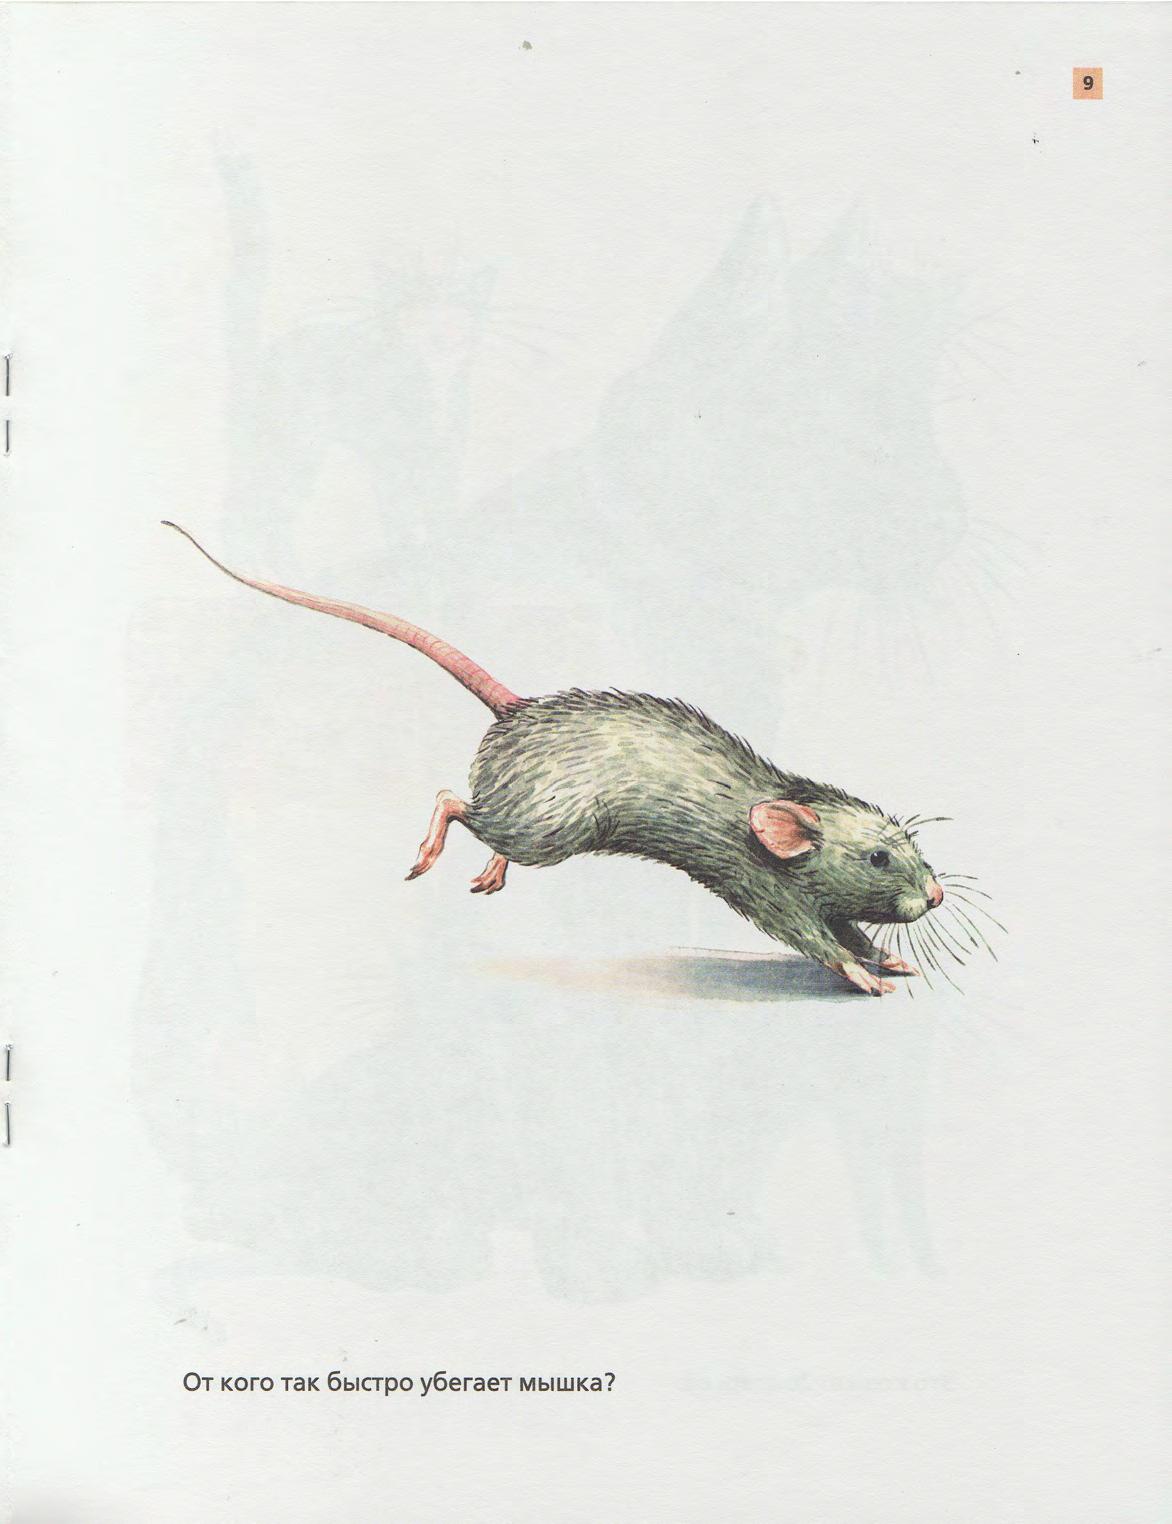 Полевая мышь убегает. Мышка убегает. Разбежались мышки вон. Ухаю на крыше разбегайтесь мыши. Мыши разбежались при виде света.